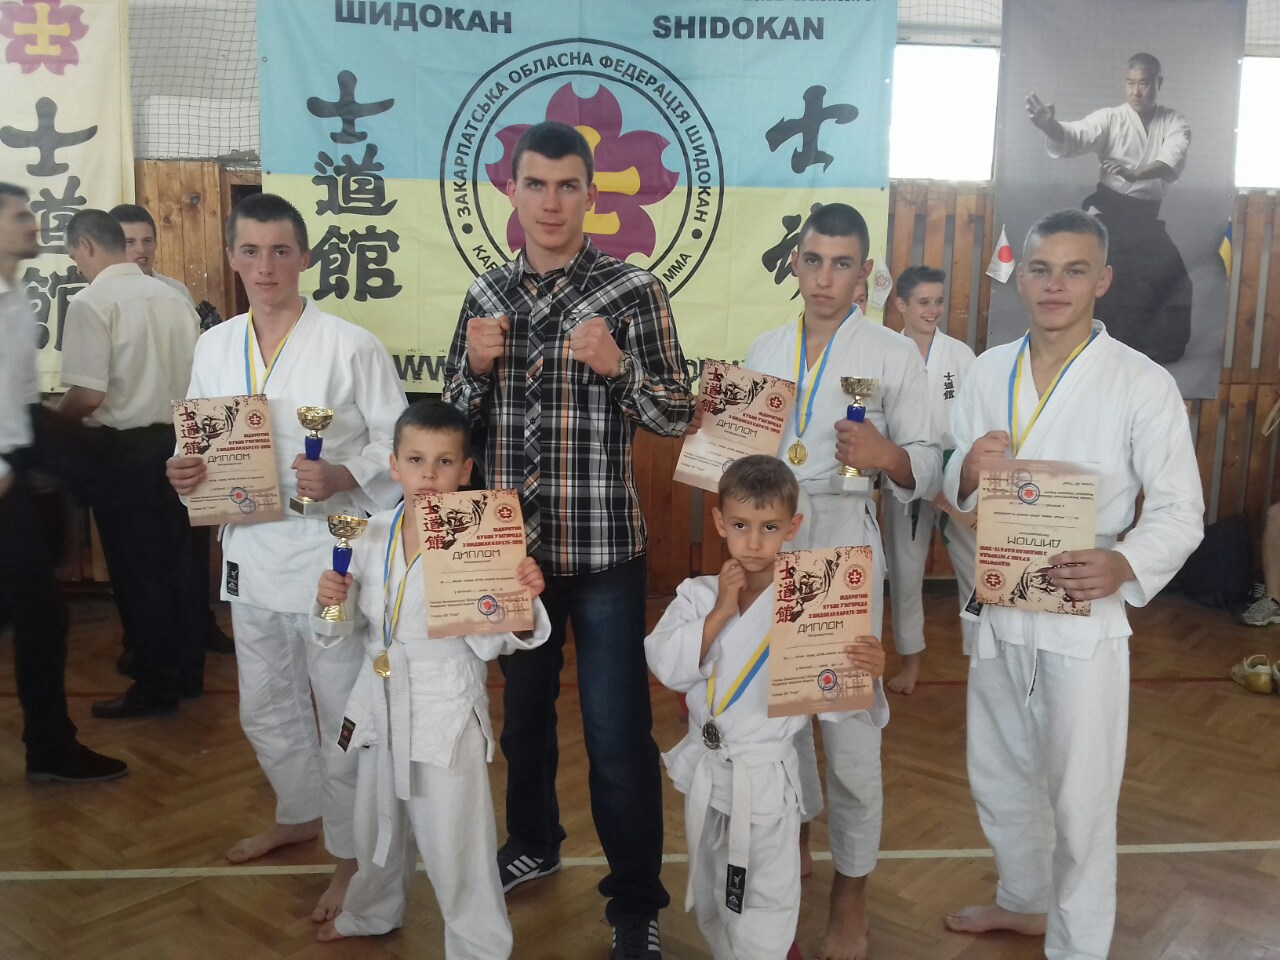 1 октября состоялся открытый Кубок Ужгорода по Шидокан каратэ среди детей, юношей и взрослых. 